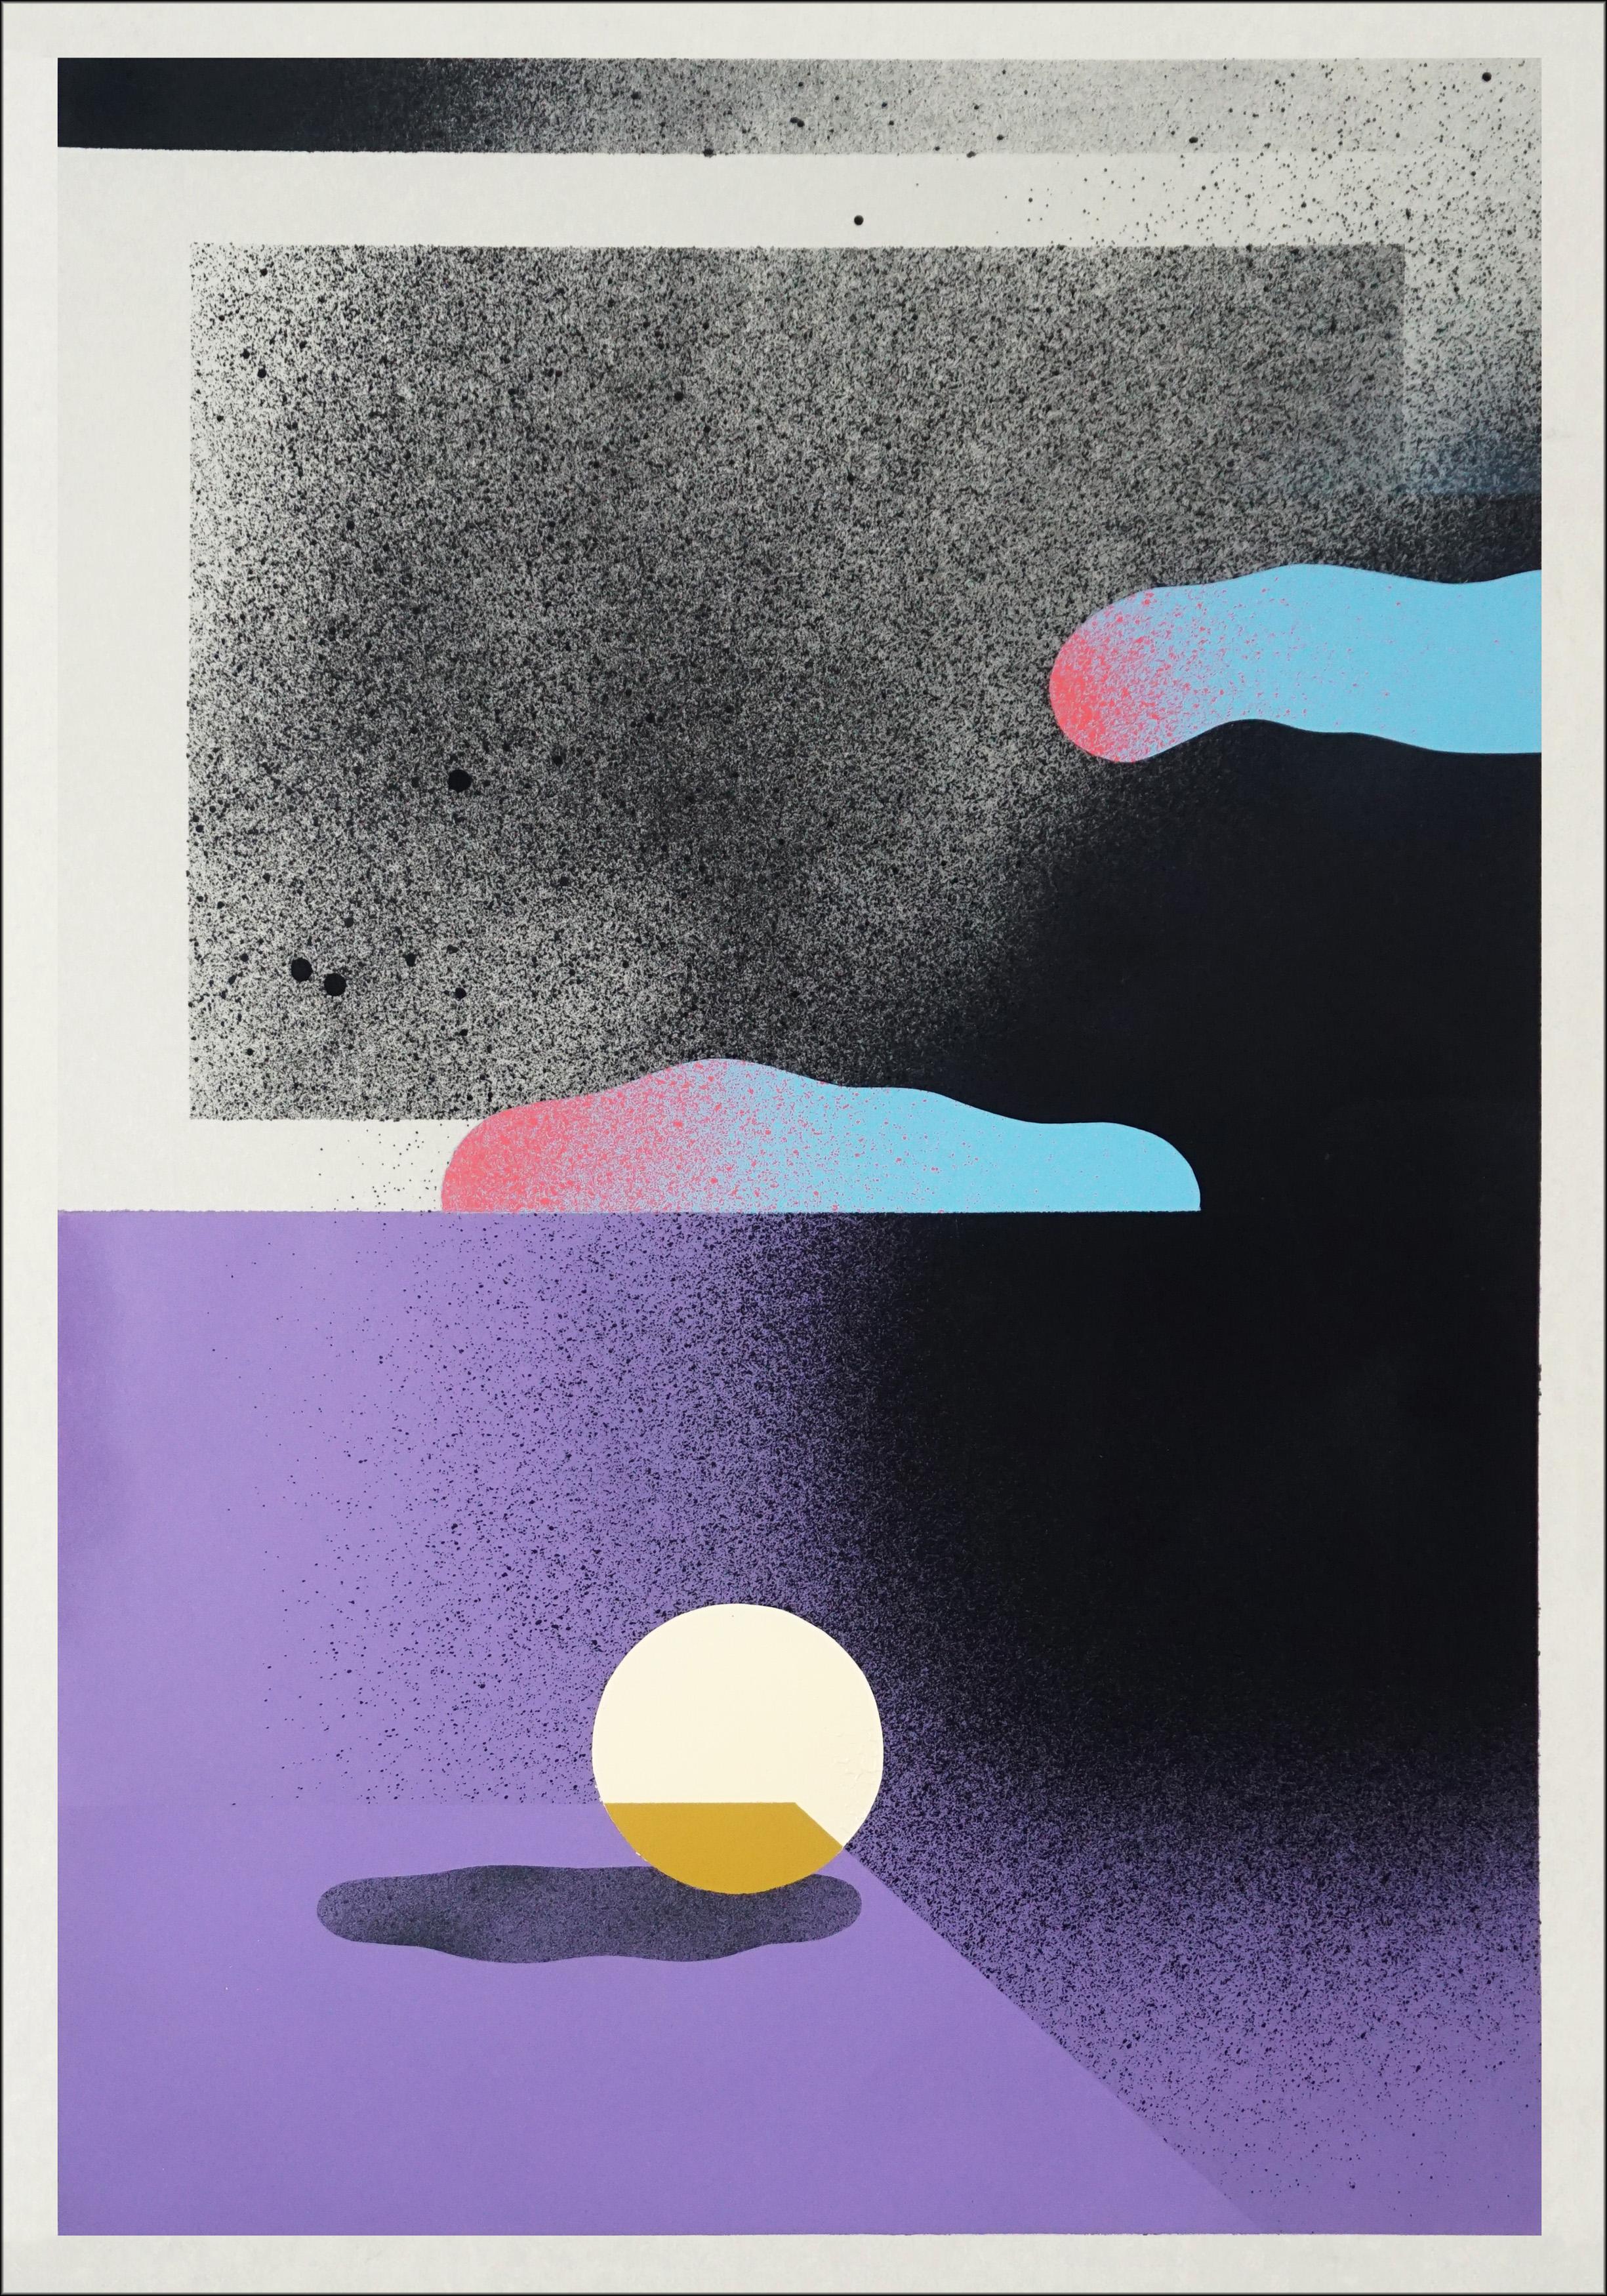 Les peintures d'Aleix Font (Sabadell, Espagne, 1984) fonctionnent comme un récit entre le monde collectif et le monde individuel, explorant l'espace et ses interactions avec des concepts tels que l'inégalité, le vide, les frontières, l'équilibre, le